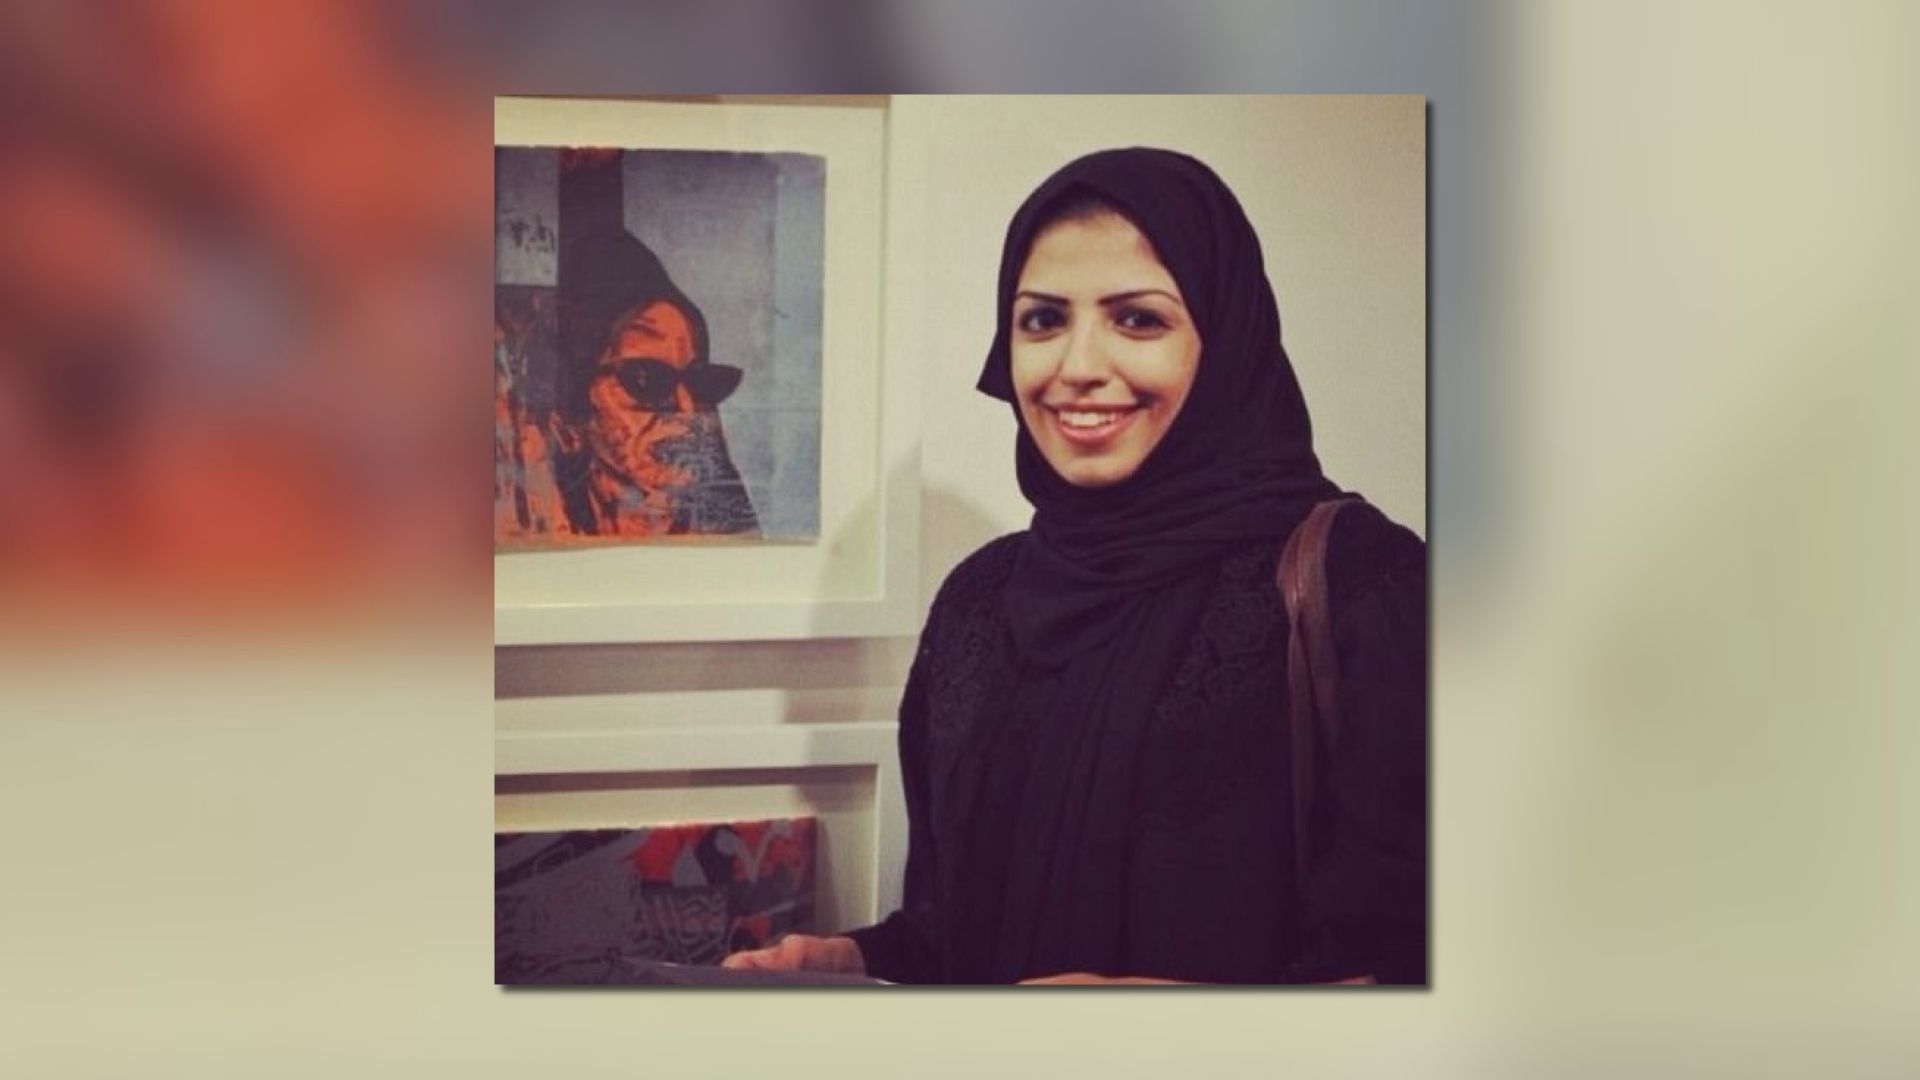 沙特女子在社交媒體追蹤及轉載異見人士帖文　被判入獄34年